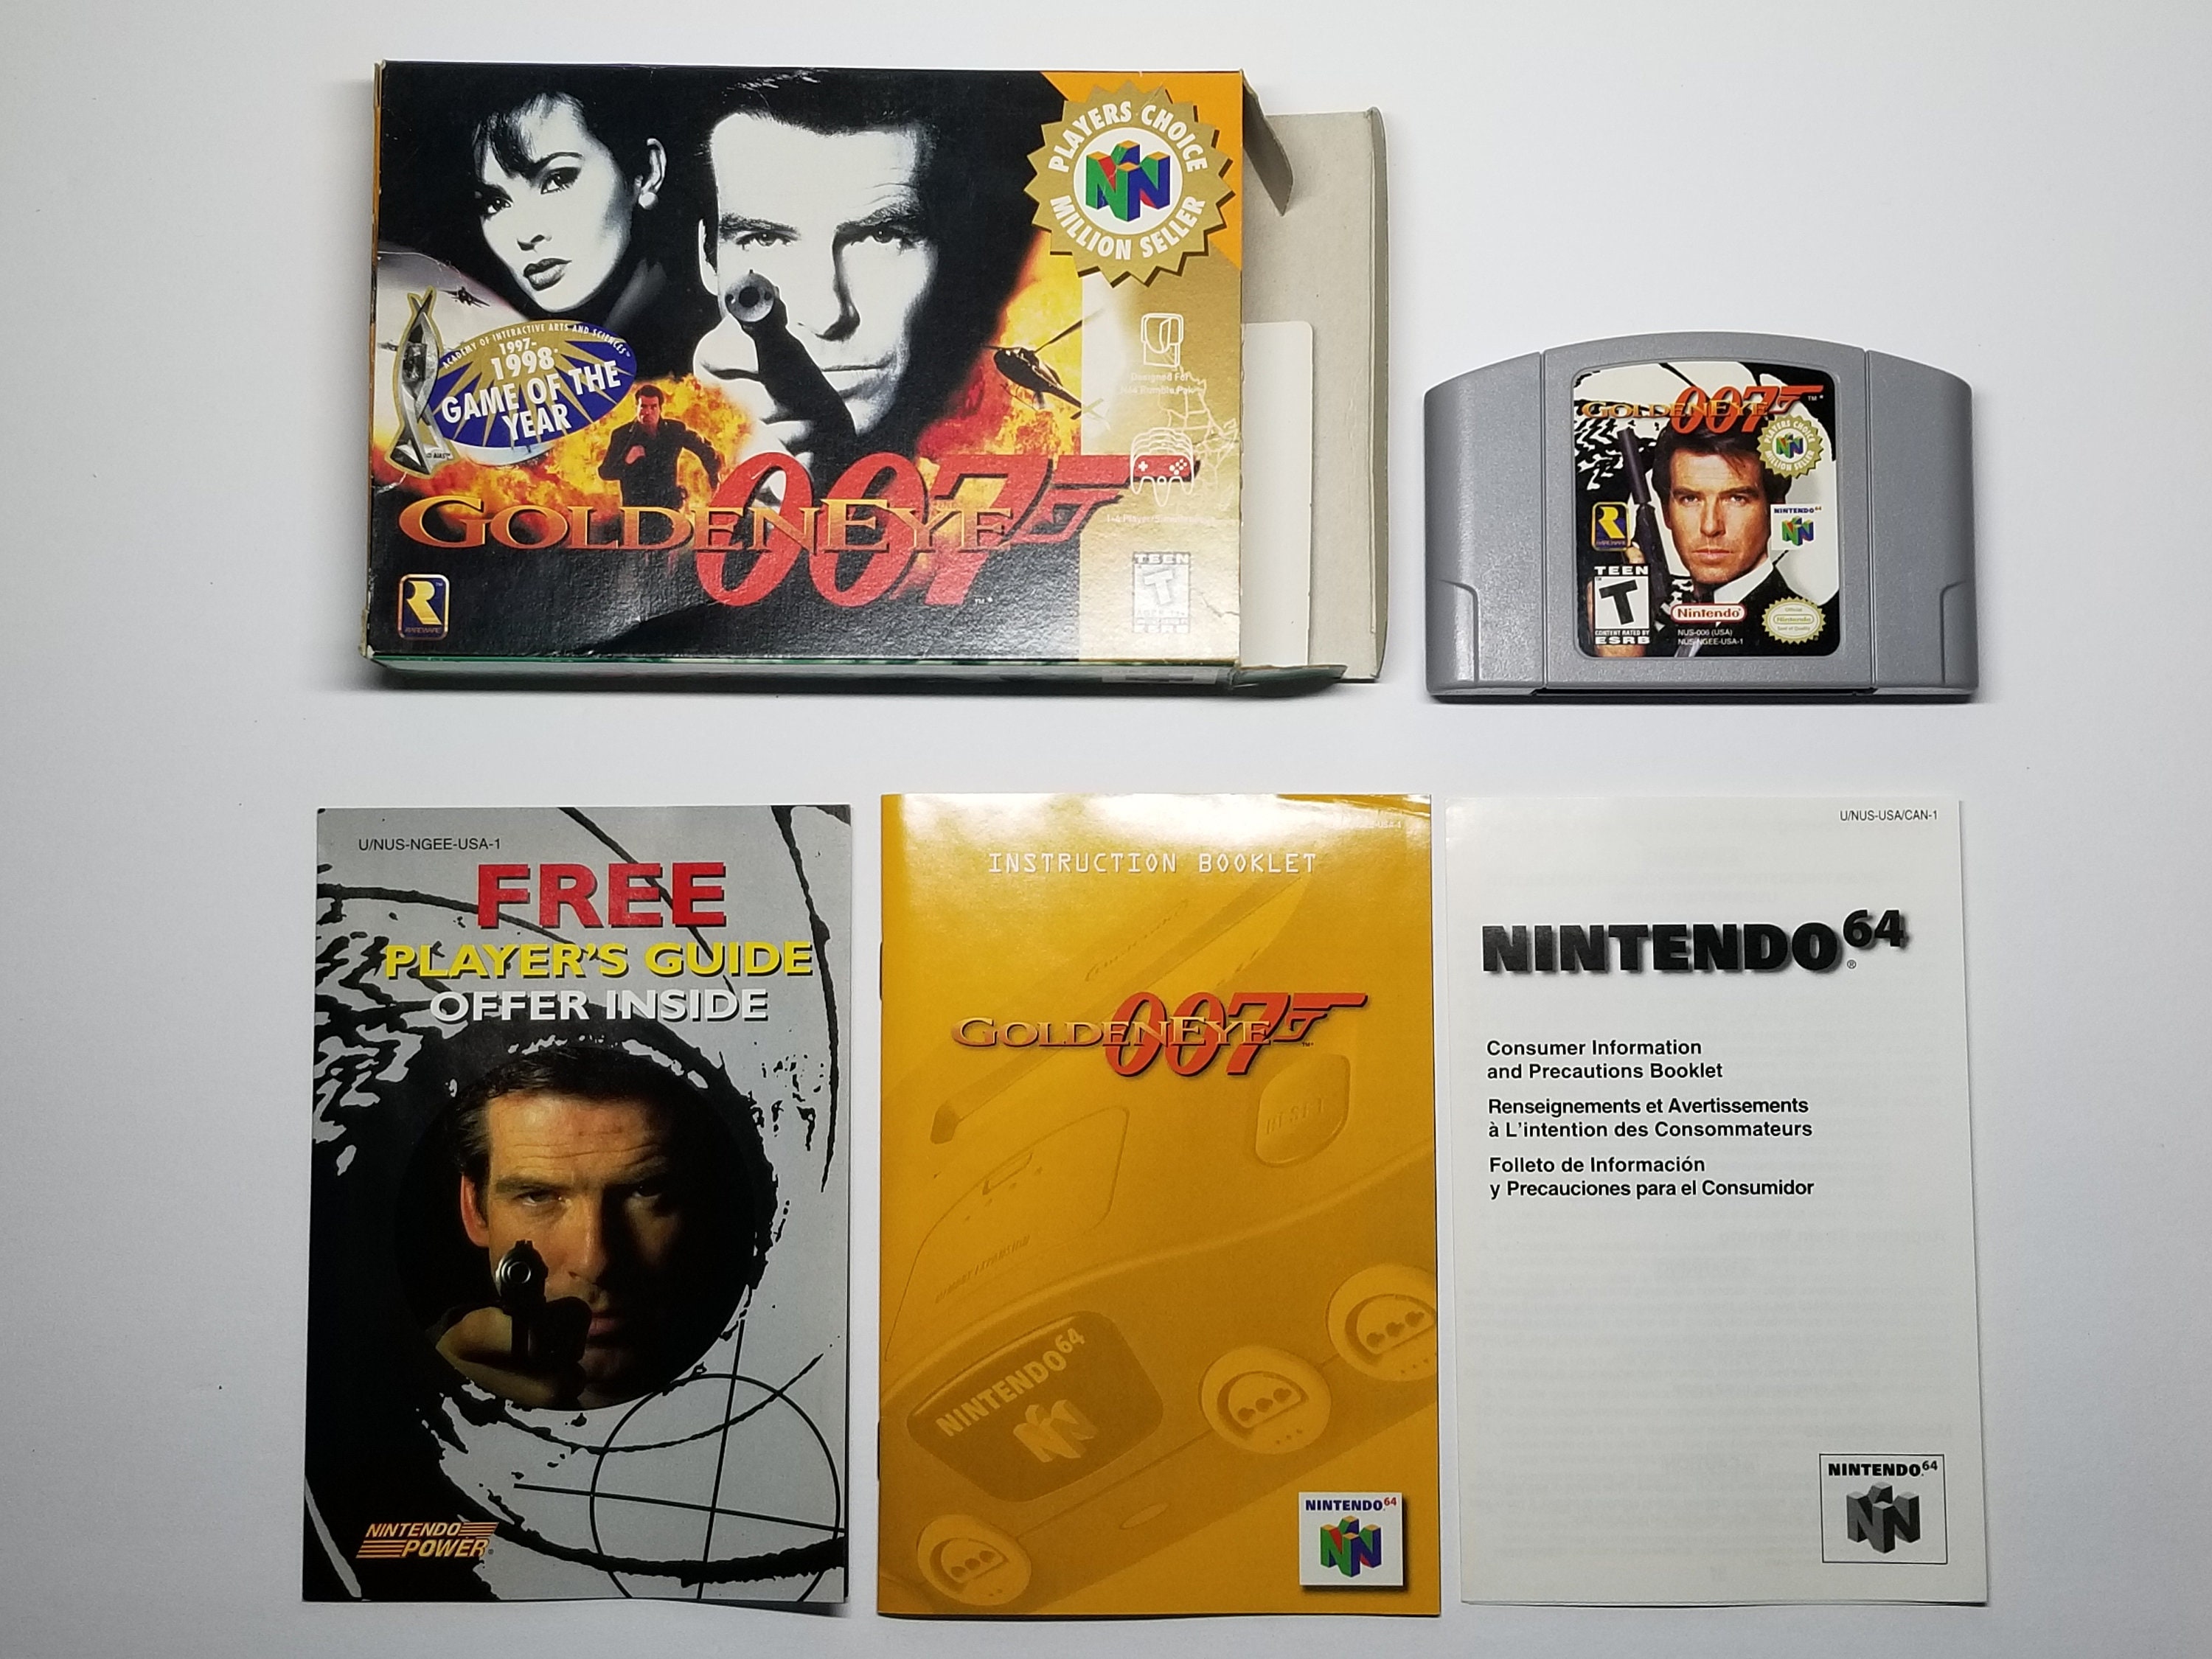 N64 Golden Eye 007 Nintendo 64 Box Manual Shooter Game Japan JP